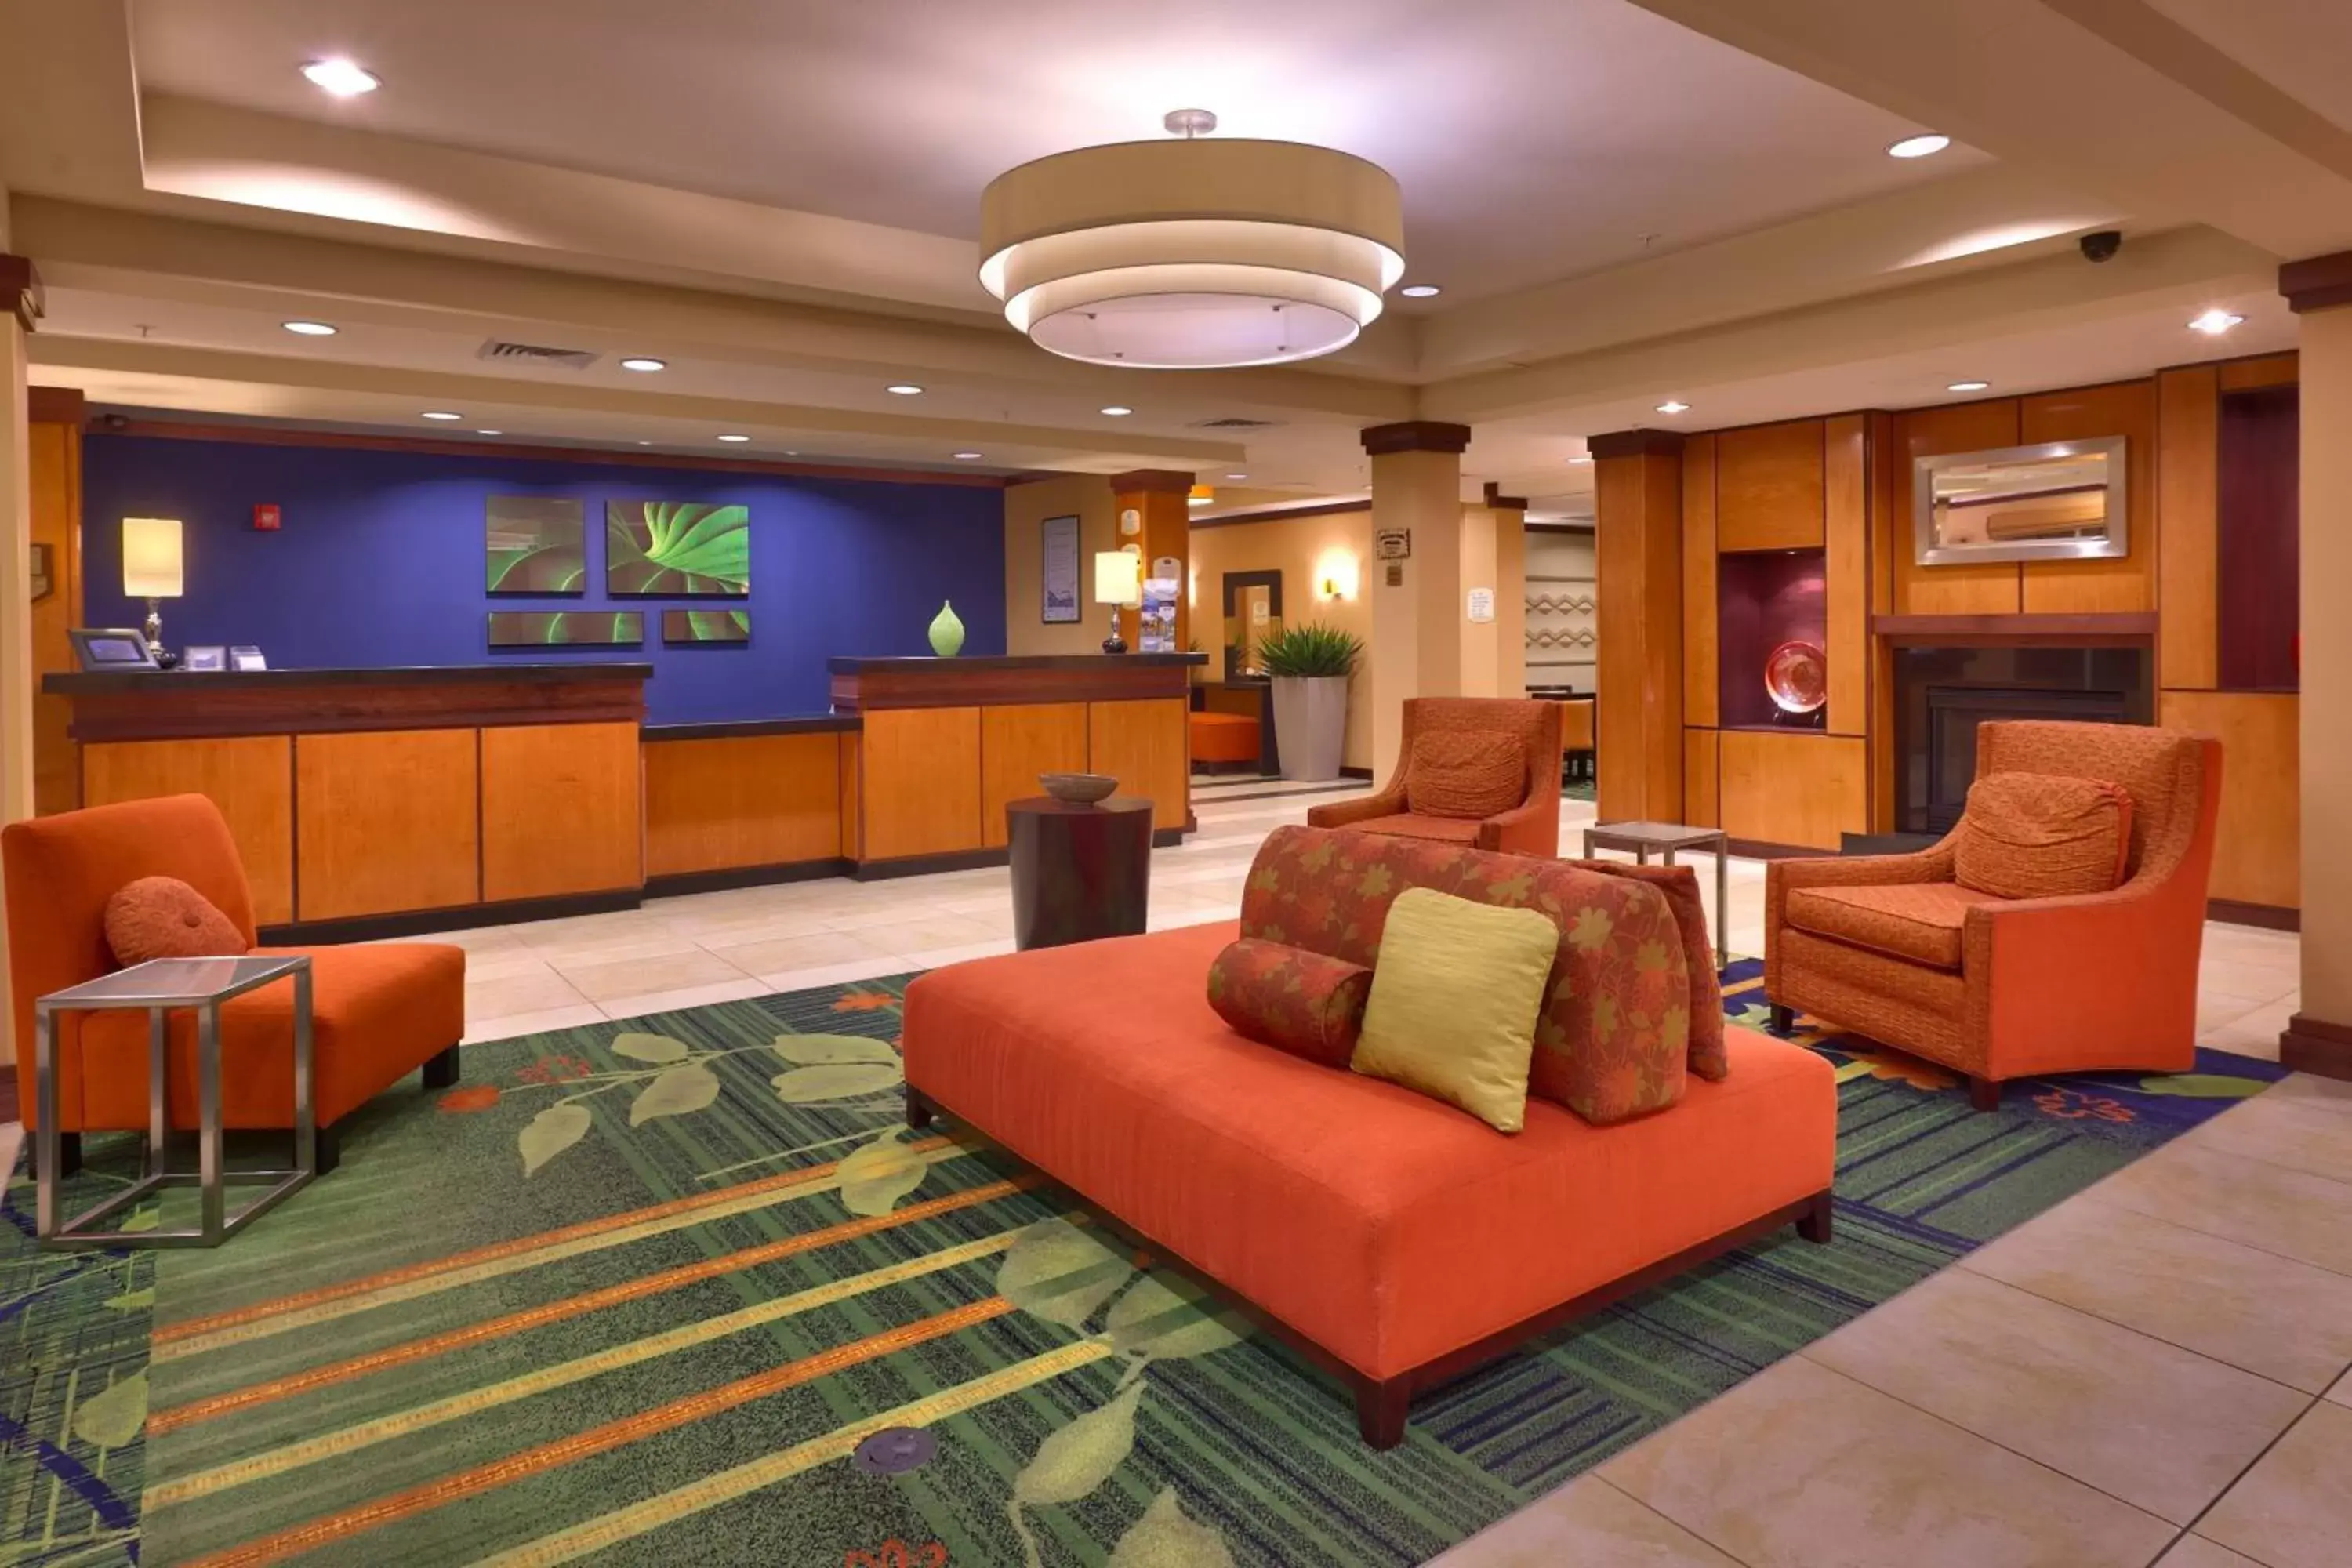 Lobby or reception, Lobby/Reception in Fairfield Inn and Suites by Marriott Laramie